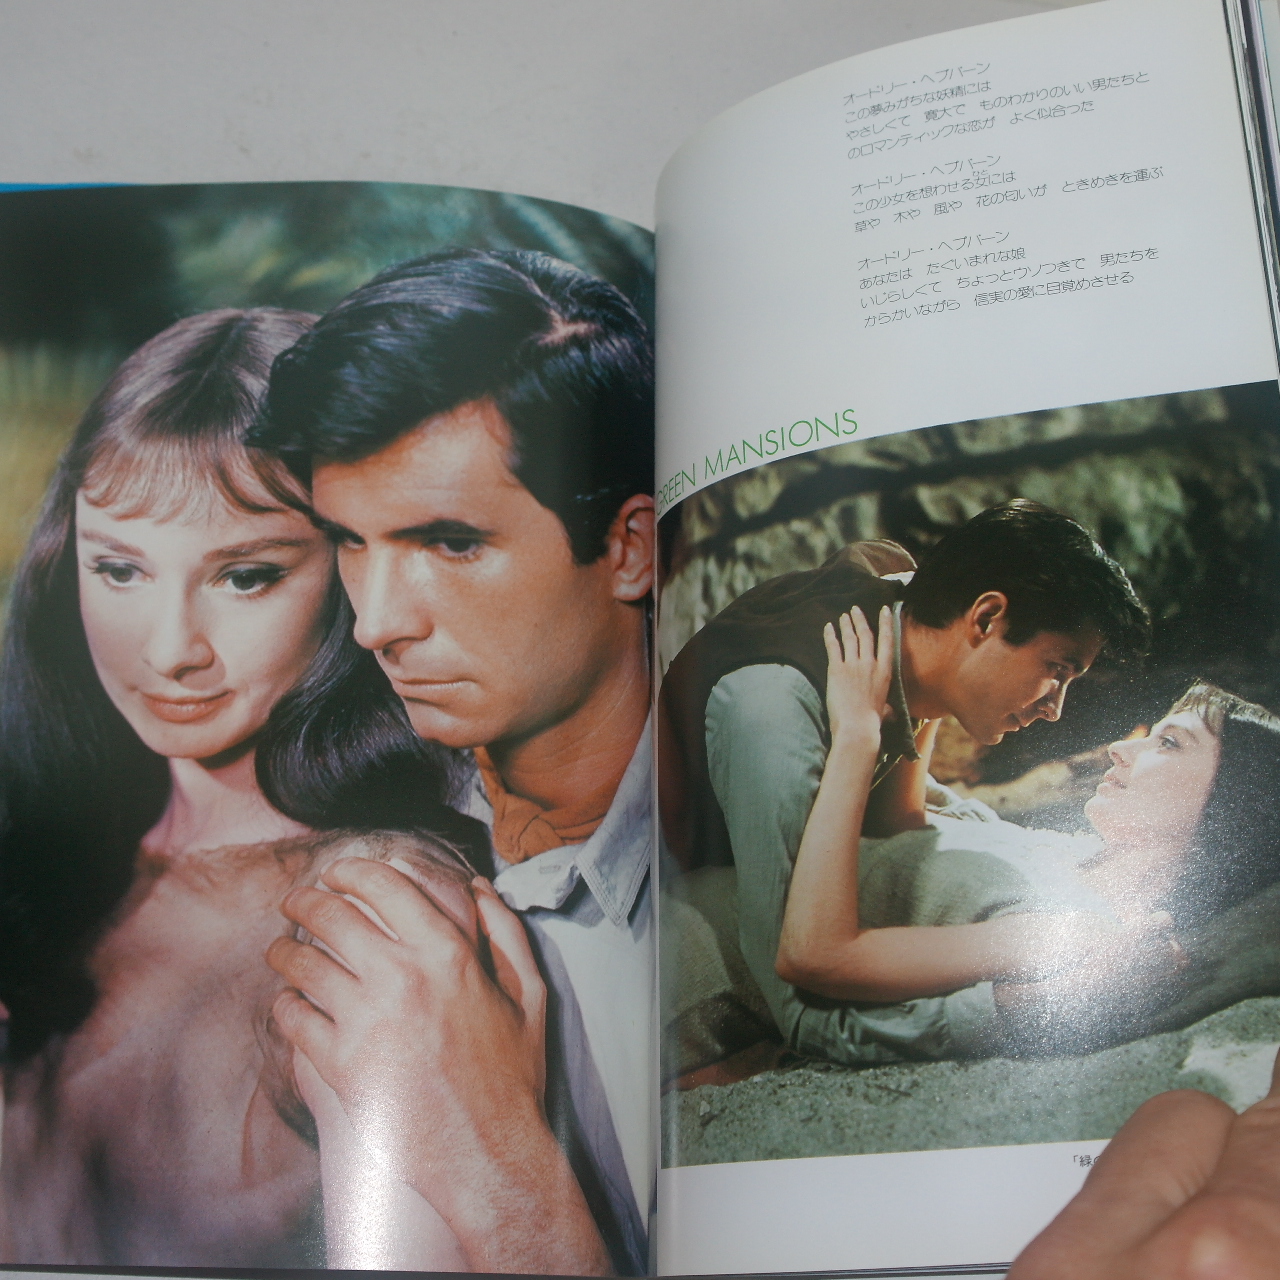 1993년 오드리햅번(Audrey Hepburn) 칼라화보집 결정판 1책